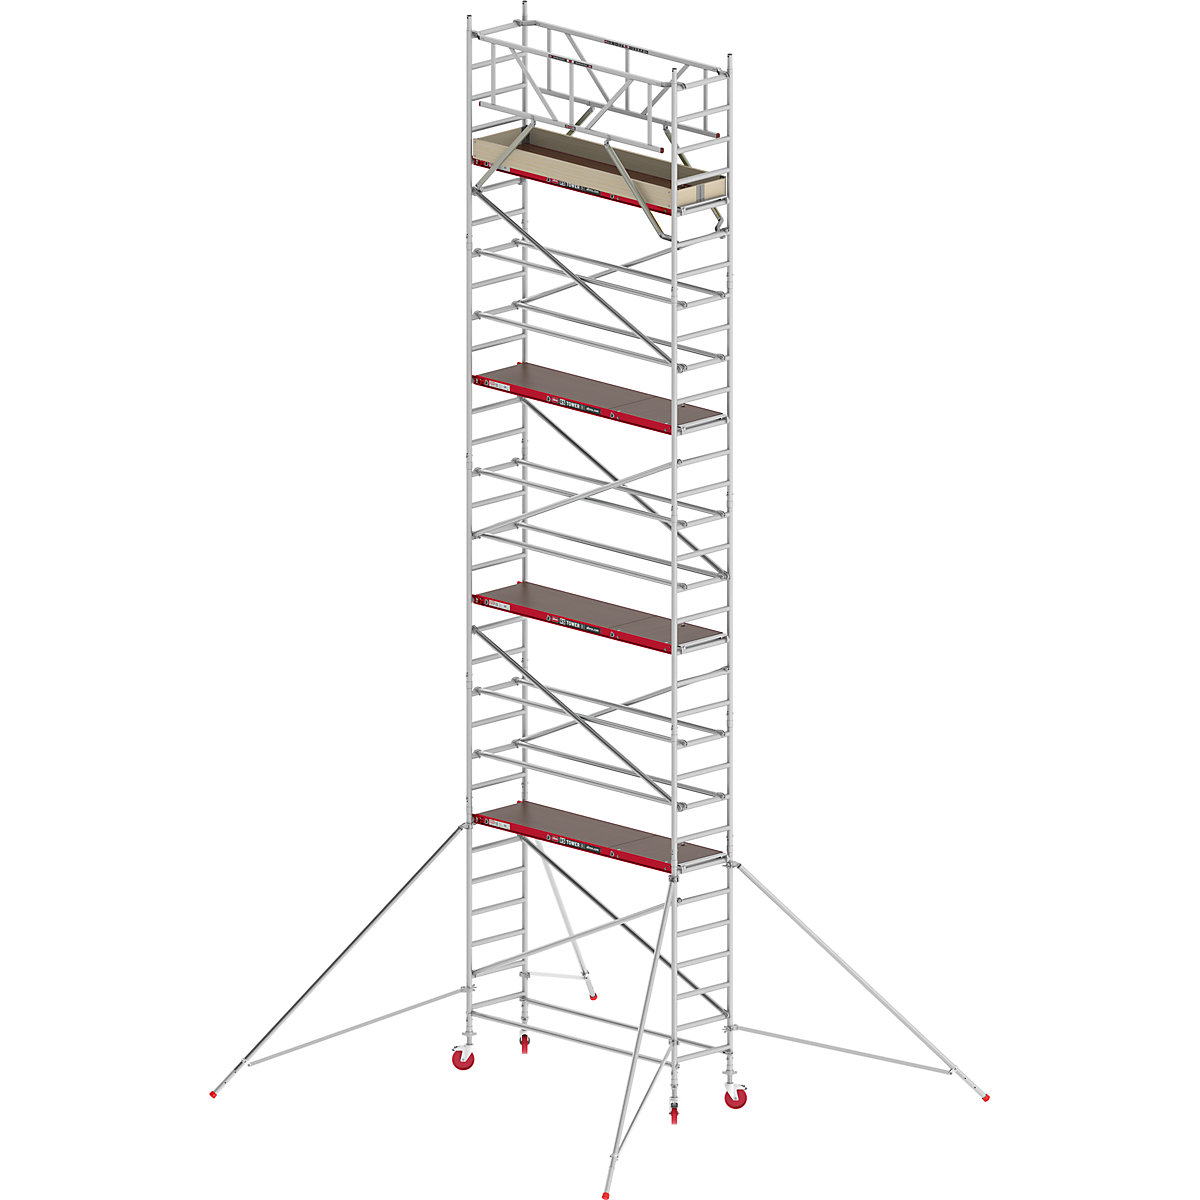 Trabattello mobile RS TOWER 41 stretto – Altrex, piattaforma in legno, lunghezza 1,85 m, altezza di lavoro 10,20 m-3